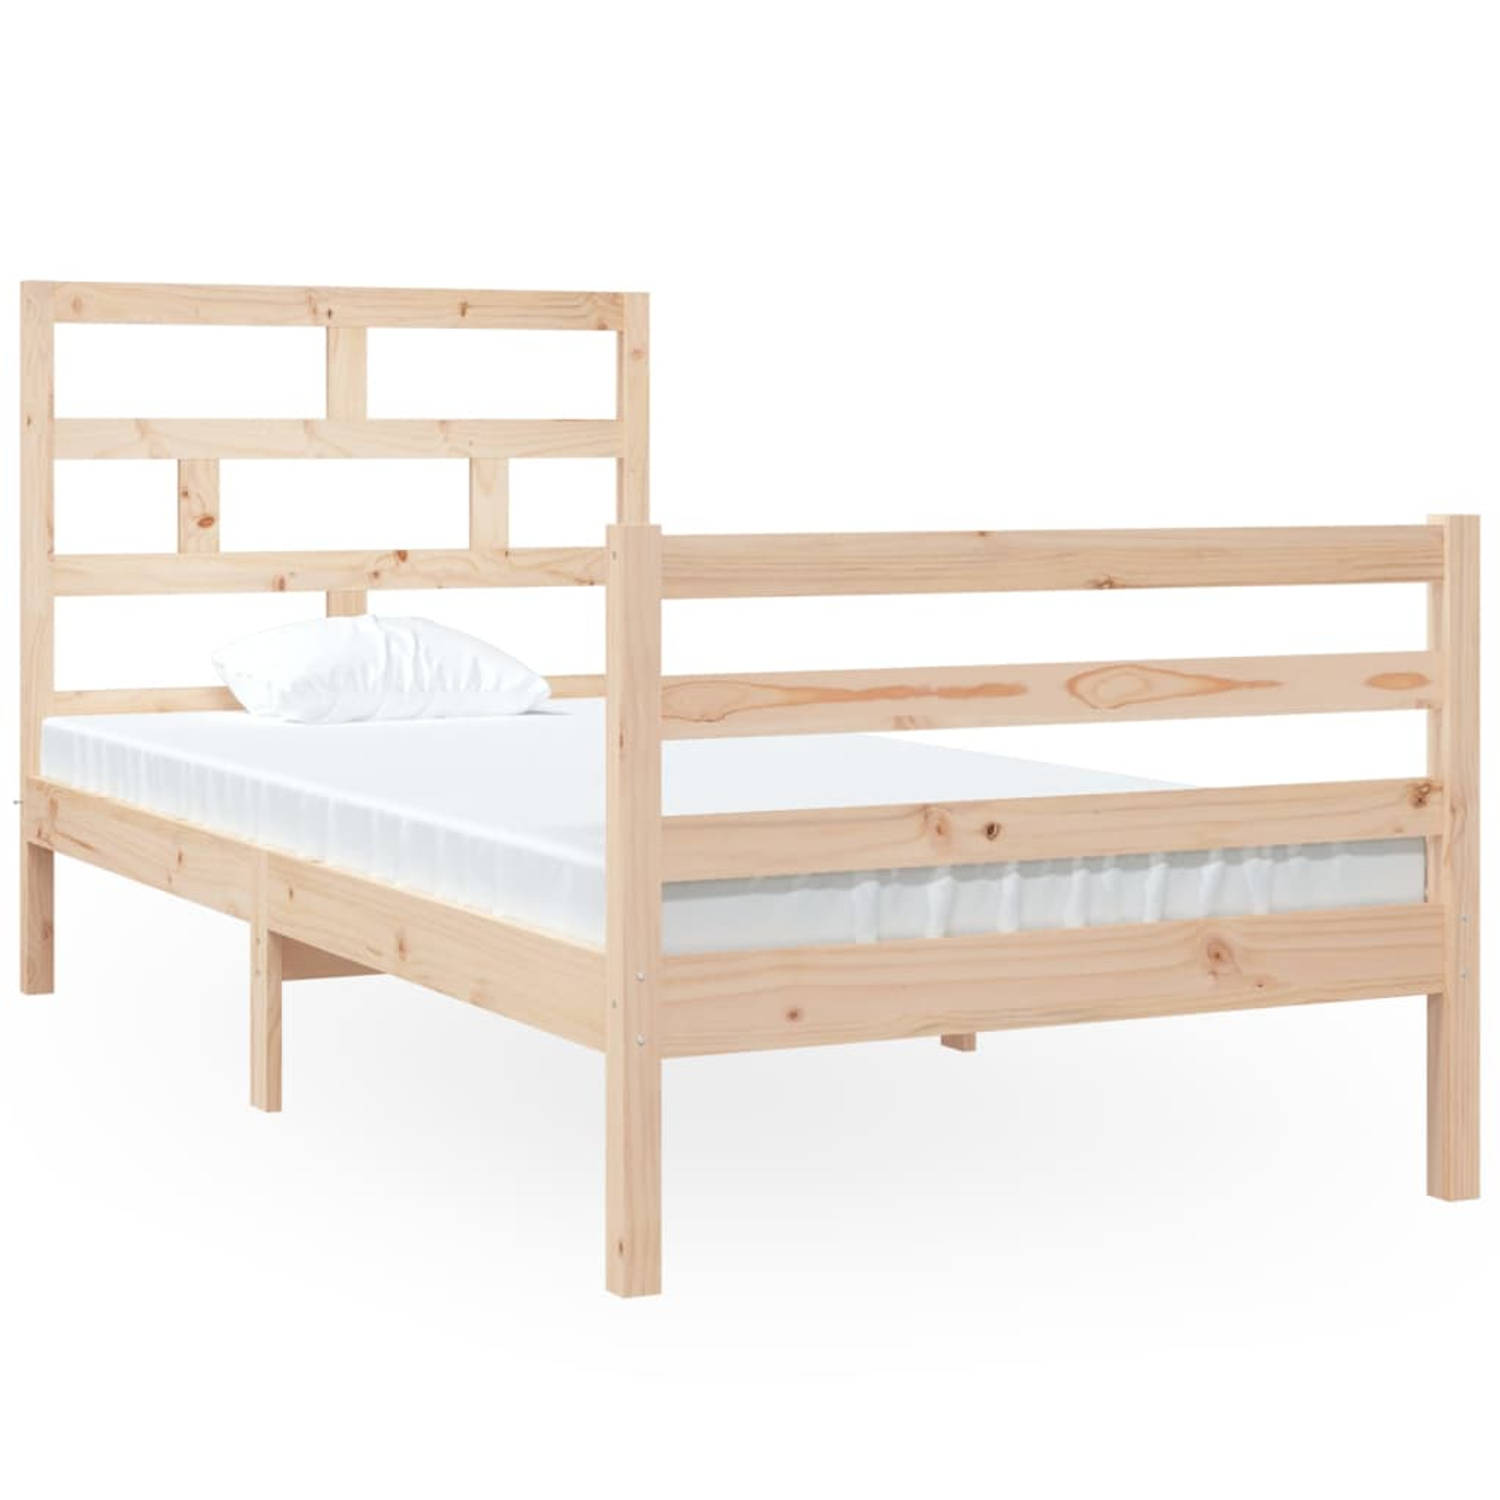 The Living Store Bedframe massief hout 90x190 cm 3FT single - Bedframe - Bedframes - Bed - Bedbodem - Ledikant - Bed Frame - Massief Houten Bedframe - Slaapmeubel - Eenpersoonsbed